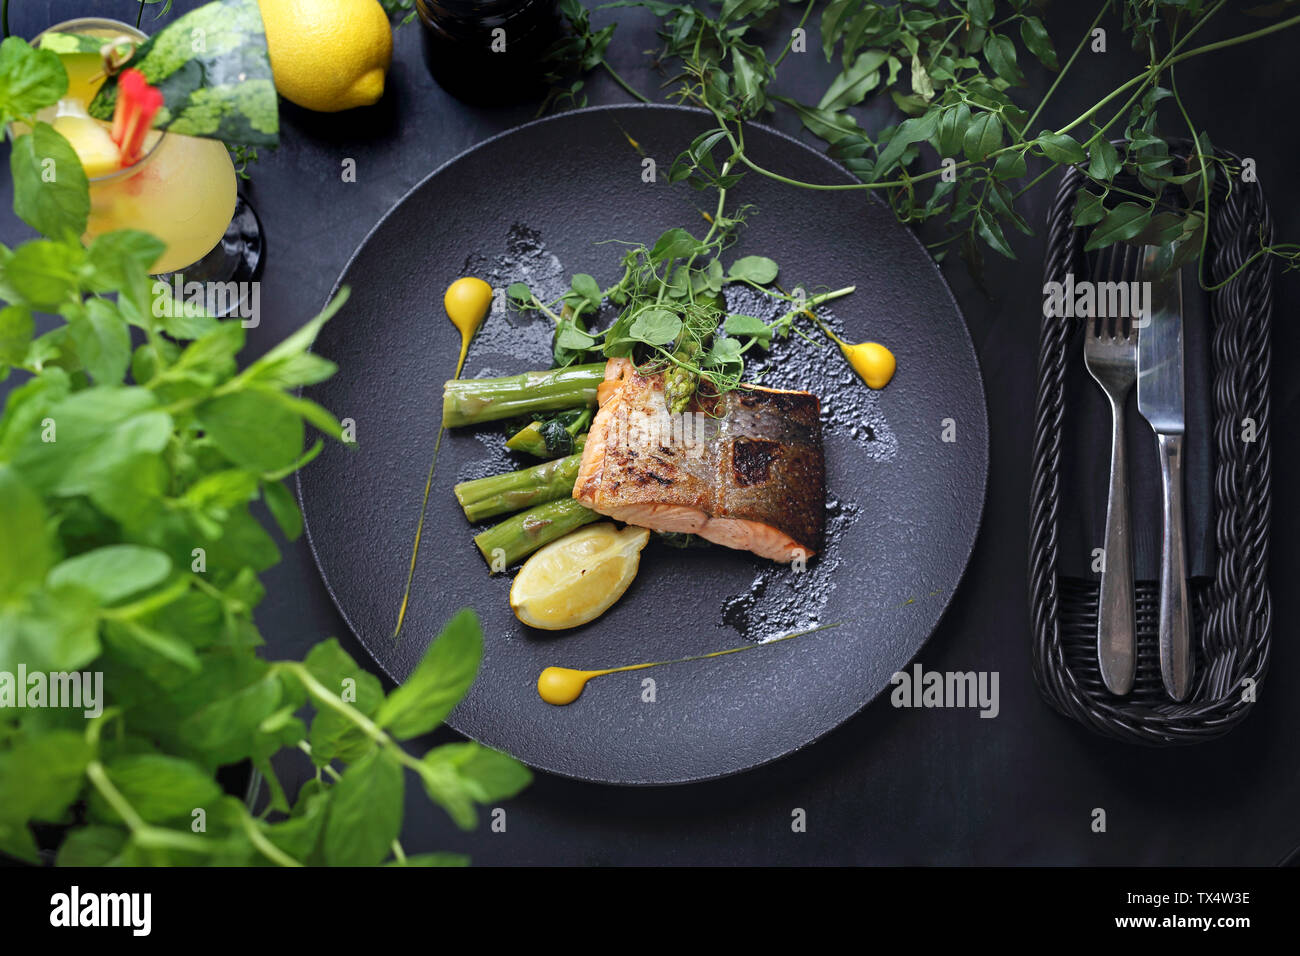 Di salmone al forno di filetto con salsa di limone servita su asparagi verdi. Un elegante piatto squisito. Foto Stock